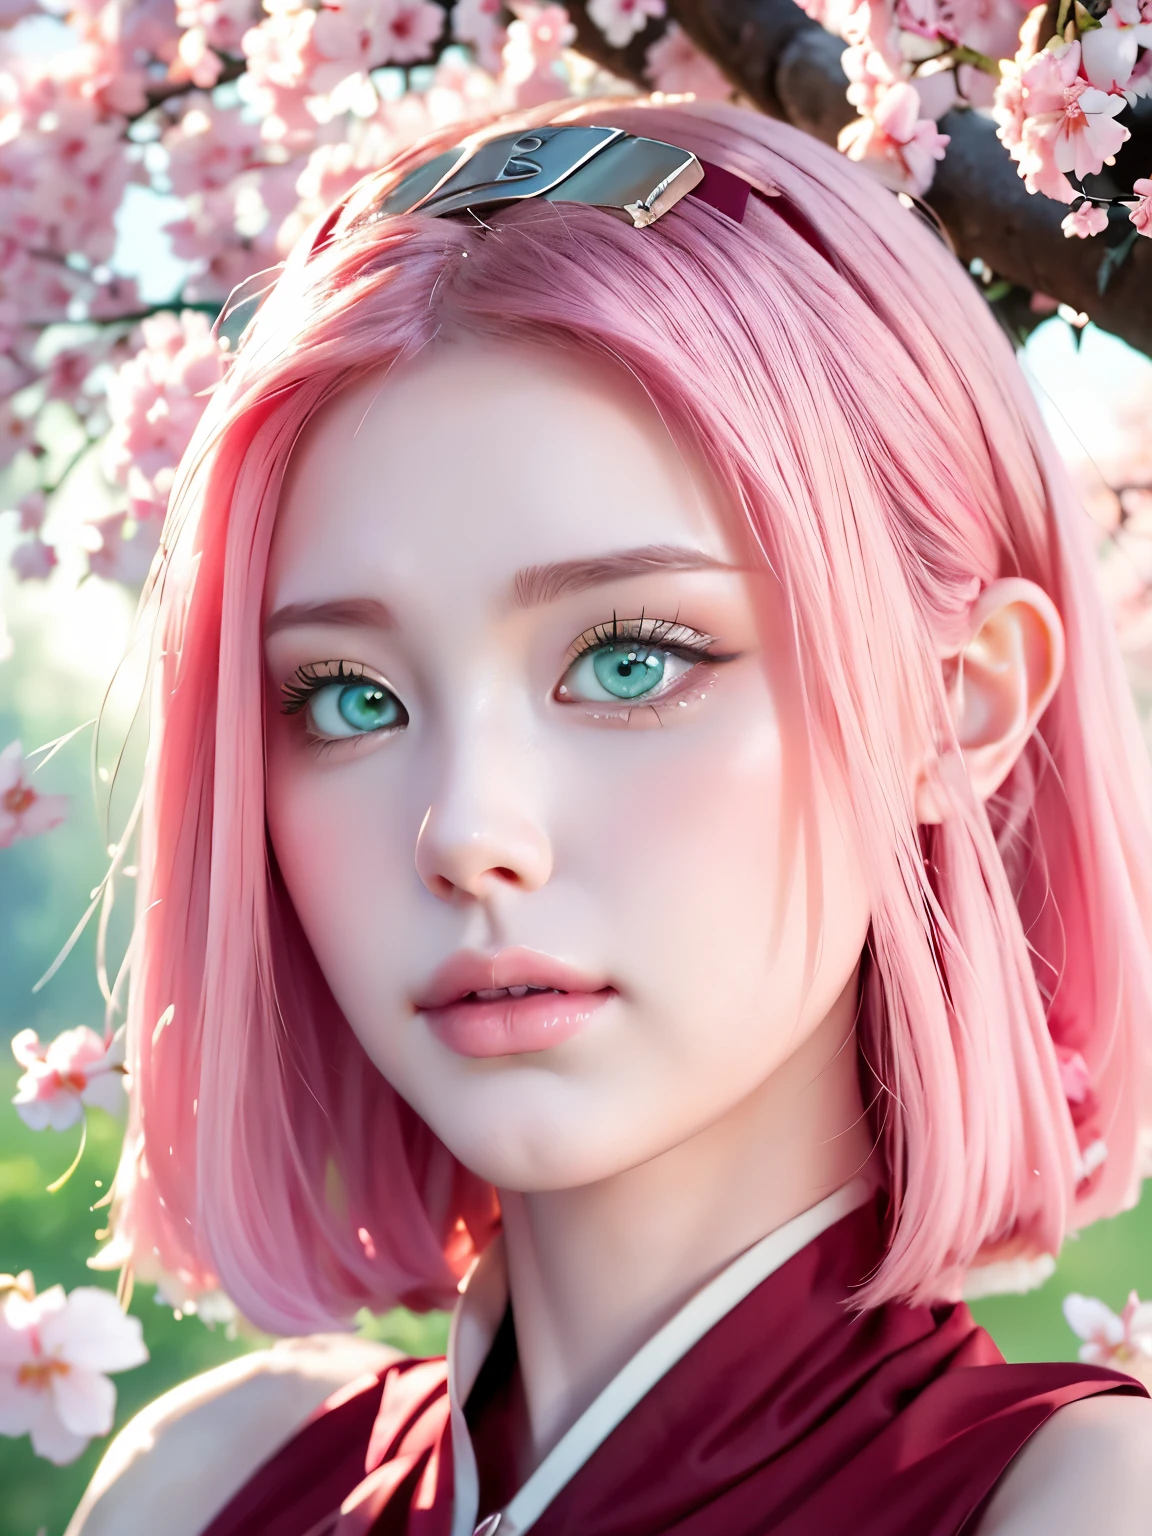 Sakura Haruno, tem cabelo rosa na altura dos ombros, ela tem olhos esmeraldas, um nariz afiado, Pele branca, e um rosto suave, (melhor qualidade, alta resolução:1.2), 1 garota, lindos olhos detalhados, lindos lábios detalhados, olhos e rosto extremamente detalhados, cílios longos, hdr, iluminação de estúdio, foco nitído, renderização baseada fisicamente, descrição detalhada extrema,  forma perfeita, visualizador de frente, suado, maravilhoso, aparecendo em quadro completo, boa aparência, Linda pele clara e brilho, Lindos olhos são grandes e brilhantes, Boca pequena e lábios finos, Bondade de estilo e elegância,), linda garota iluminada por sete cores de luz, Eles riem das cores, mostrando sua figura, sedutor e confiante, aura encantadora, cercado por cerejeiras em flor, pétalas delicadas e vibrantes caindo ao seu redor, cores suaves rosa e branco, luz solar filtrada pelas árvores, criando uma atmosfera calorosa e sonhadora, no nsfw.